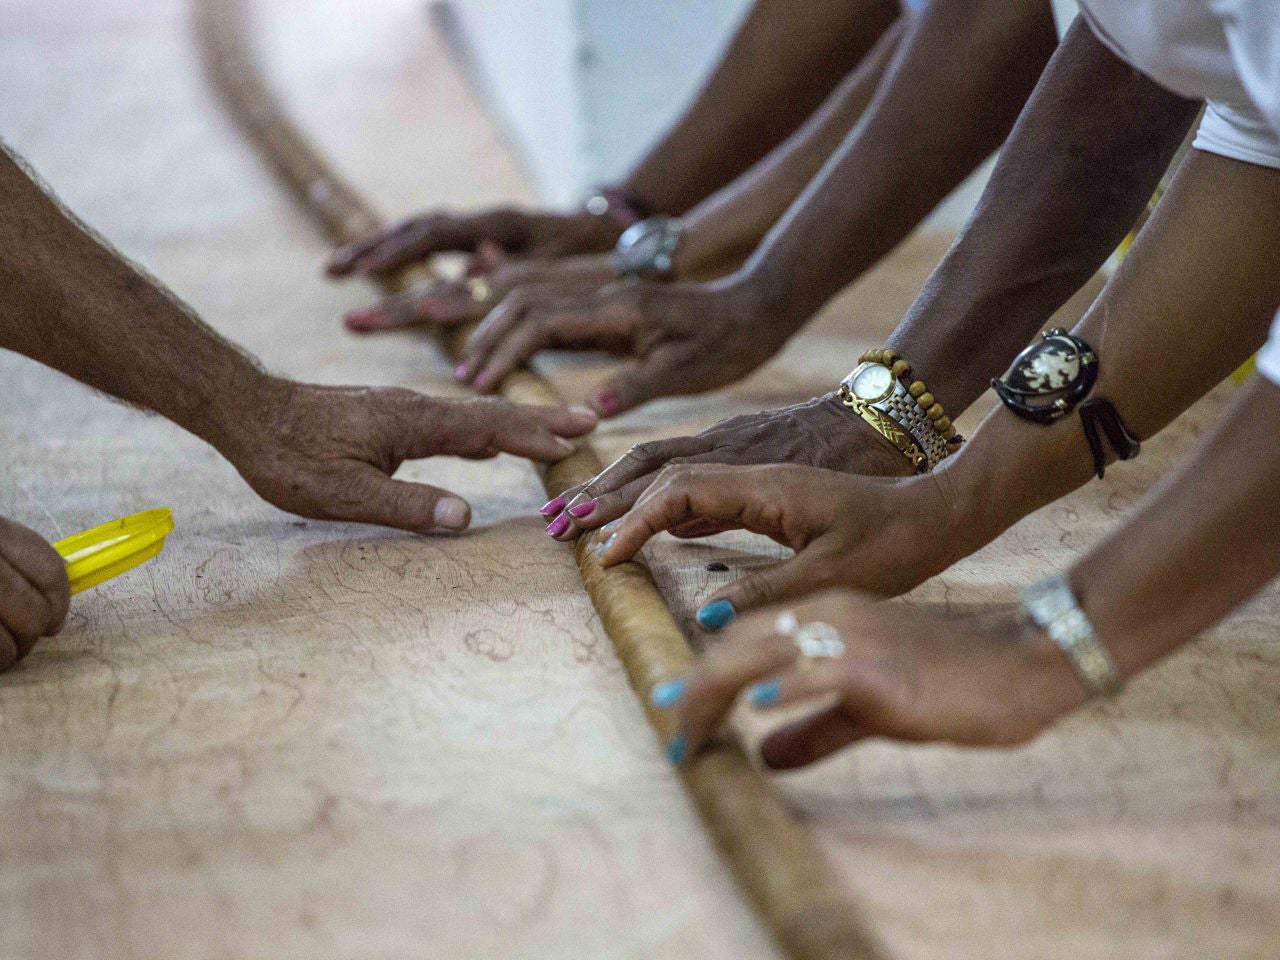 Workers help Cuban cigar roller Jose "Cueto" Castelar Hand roll a 90m cigar